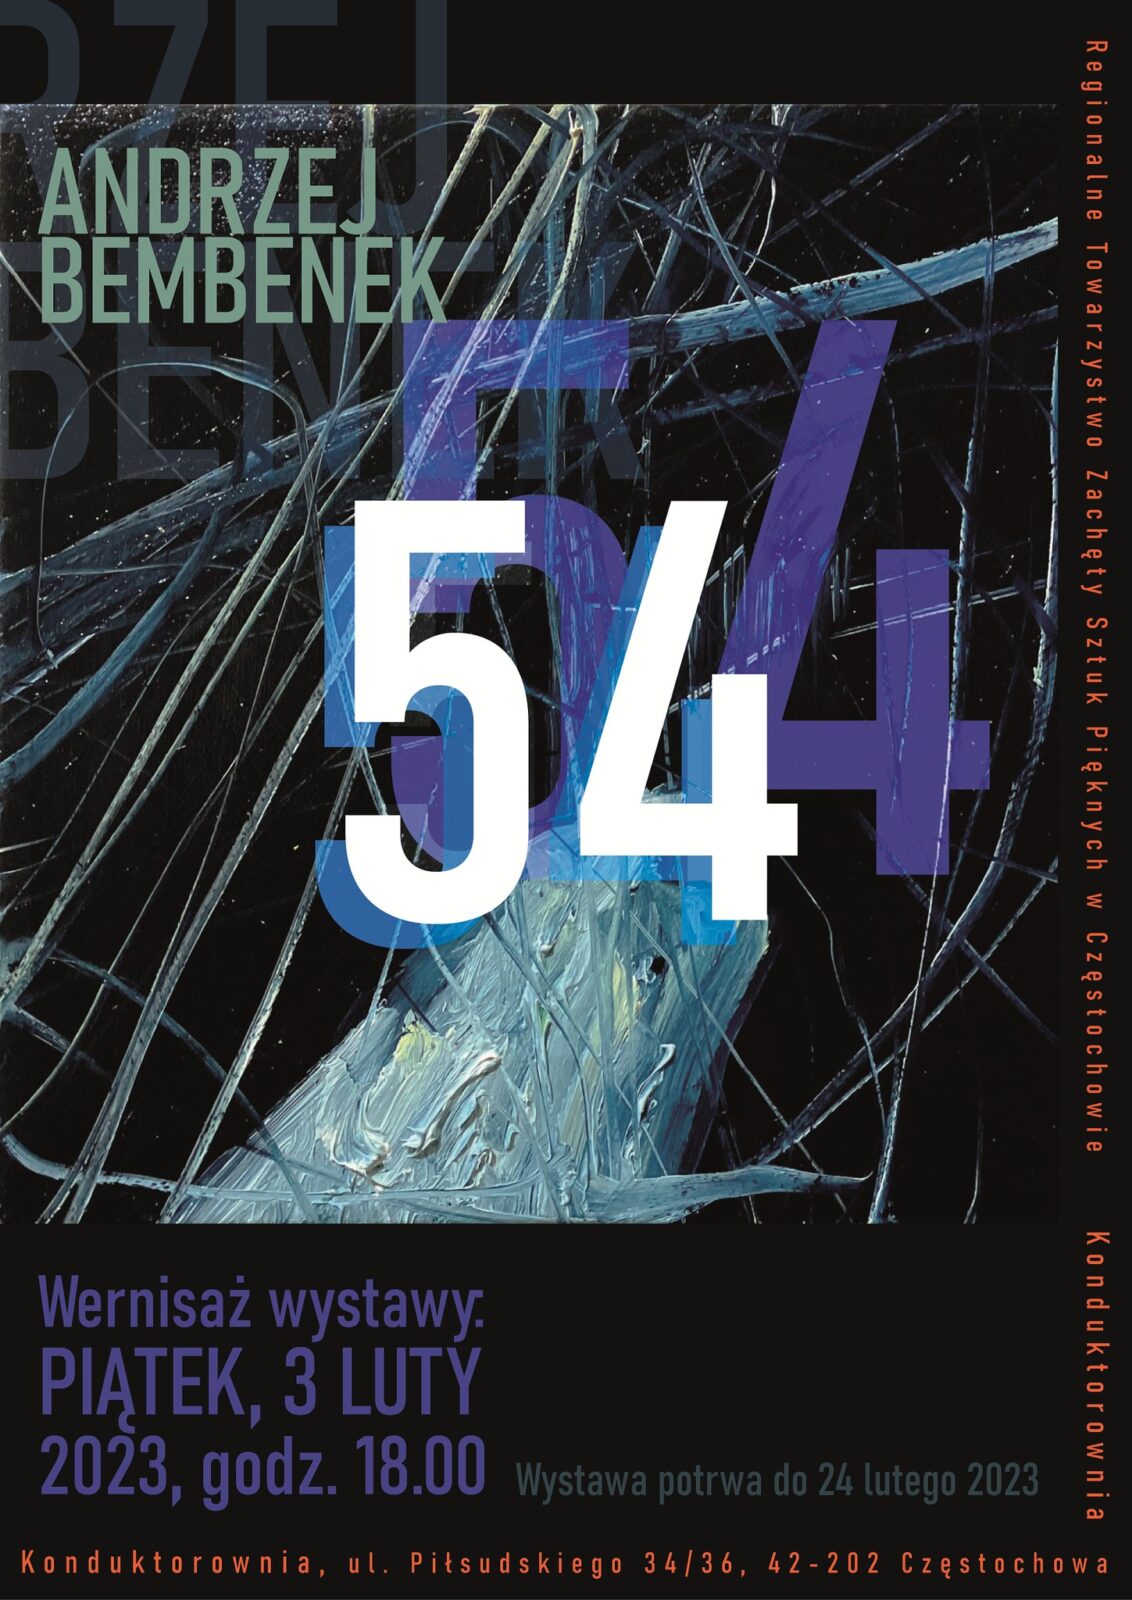 Nowa wystawa w częstochowskiej Konduktorowni. To "54" Andrzeja Bembenka 4